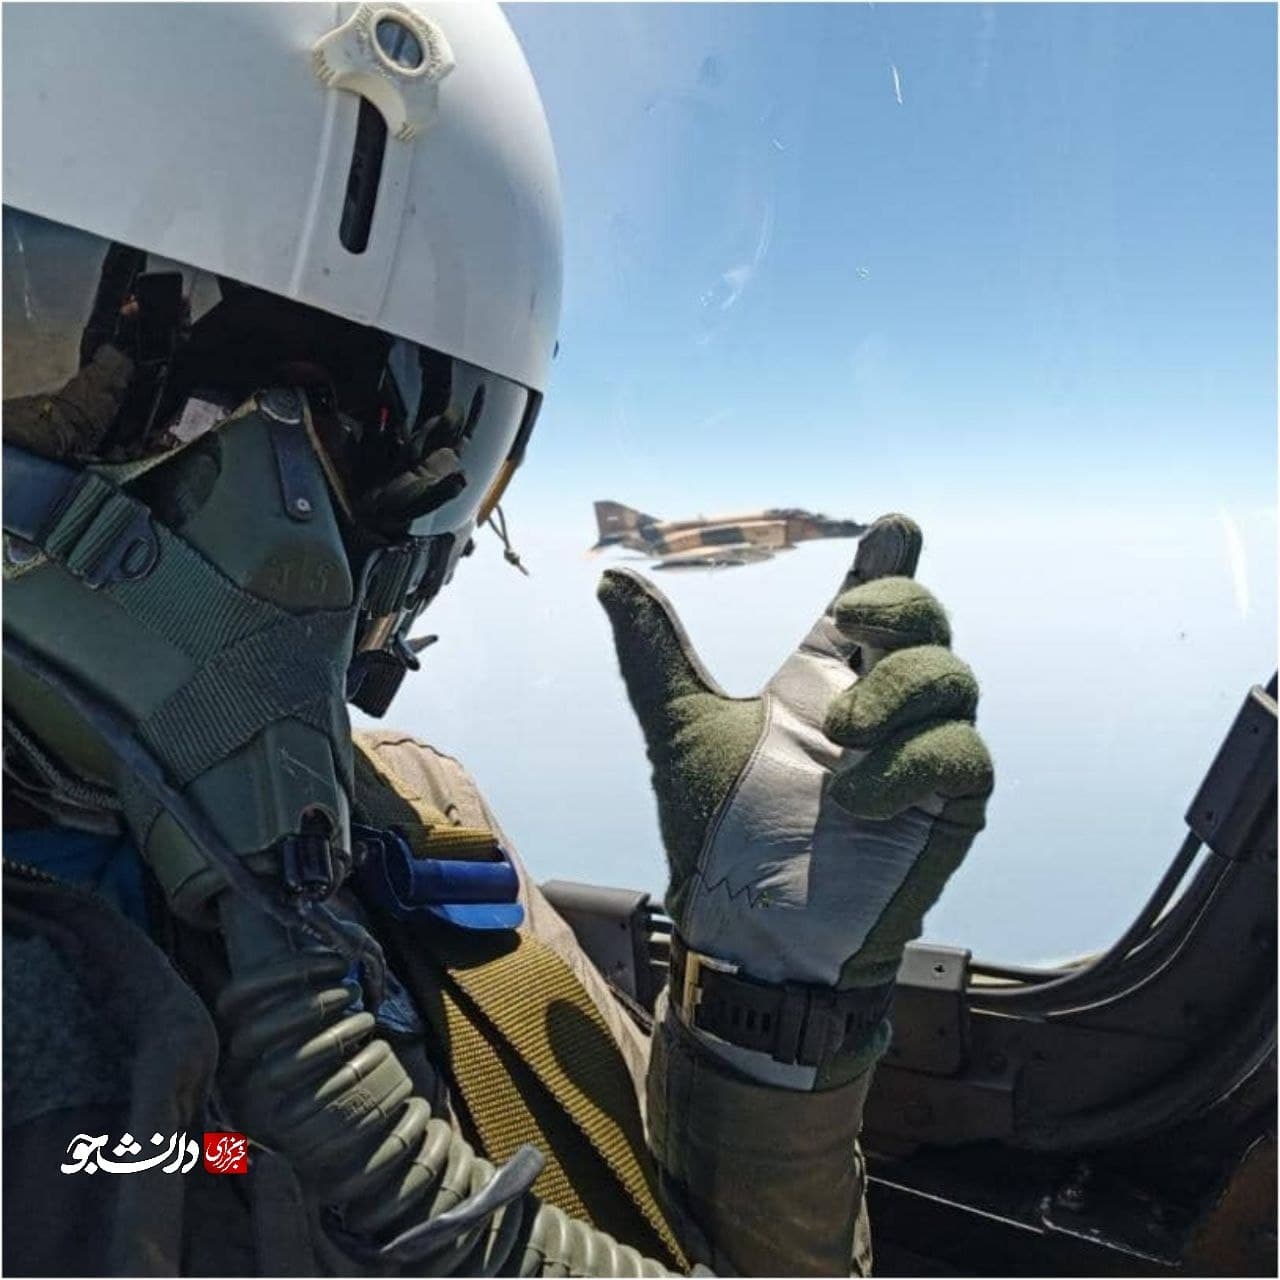 سلفی جالب یک خلبان جنگنده در جریان رزمایش ارتش